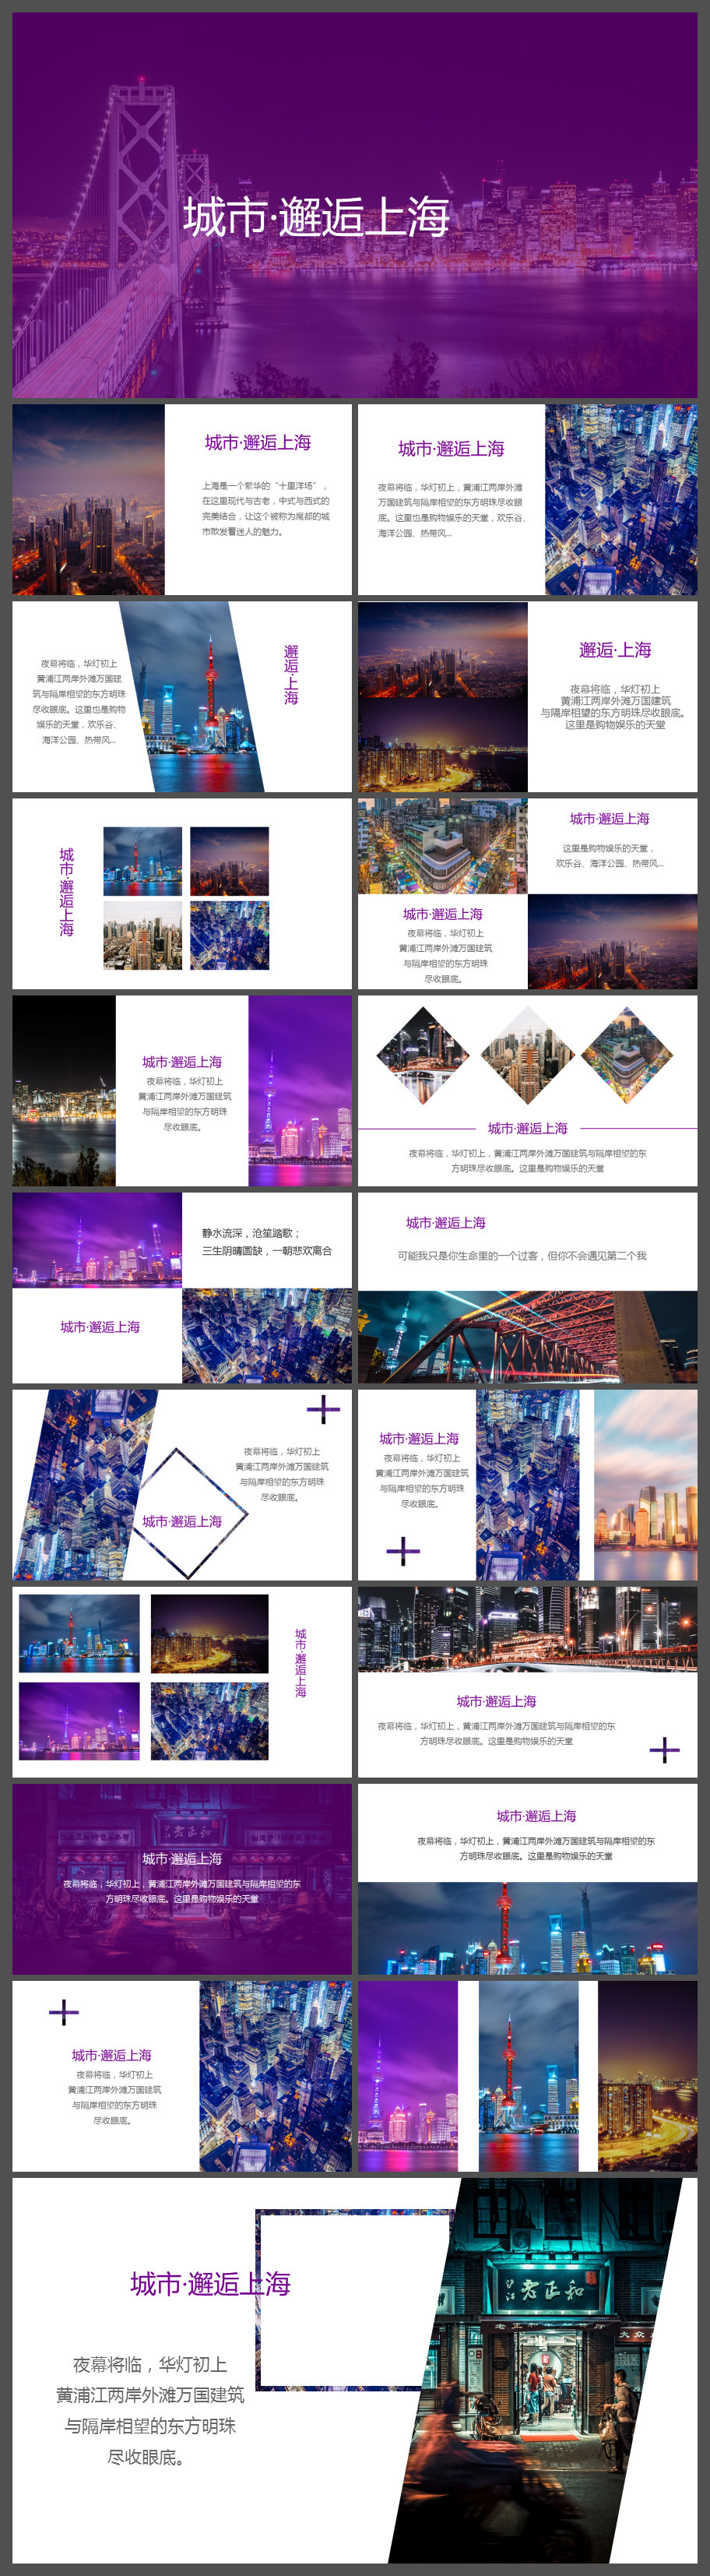 紫色时尚酷炫上海旅游画册宣传PPT模板